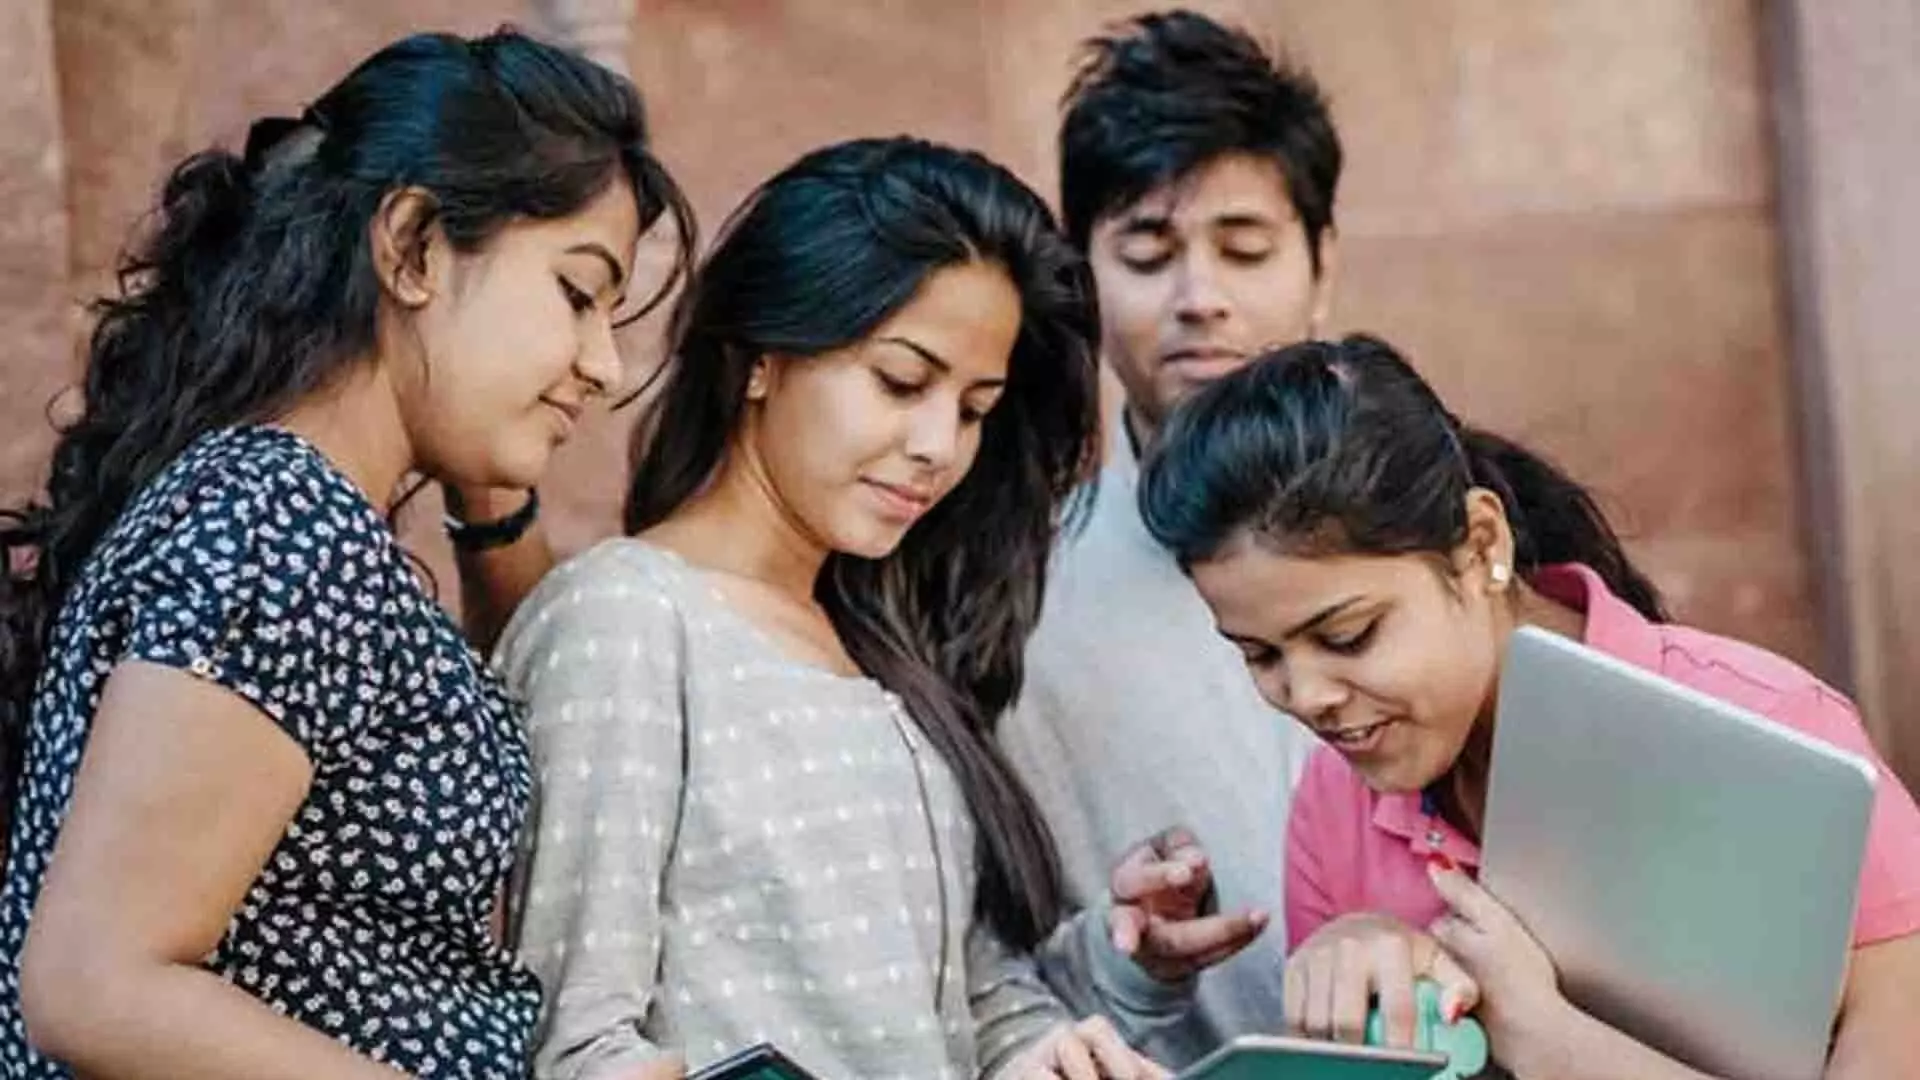 विश्वविद्यालयों, कॉलेजों से पीएचडी प्रवेश के लिए राष्ट्रीय पात्रता परीक्षा स्कोर का उपयोग का आग्रह